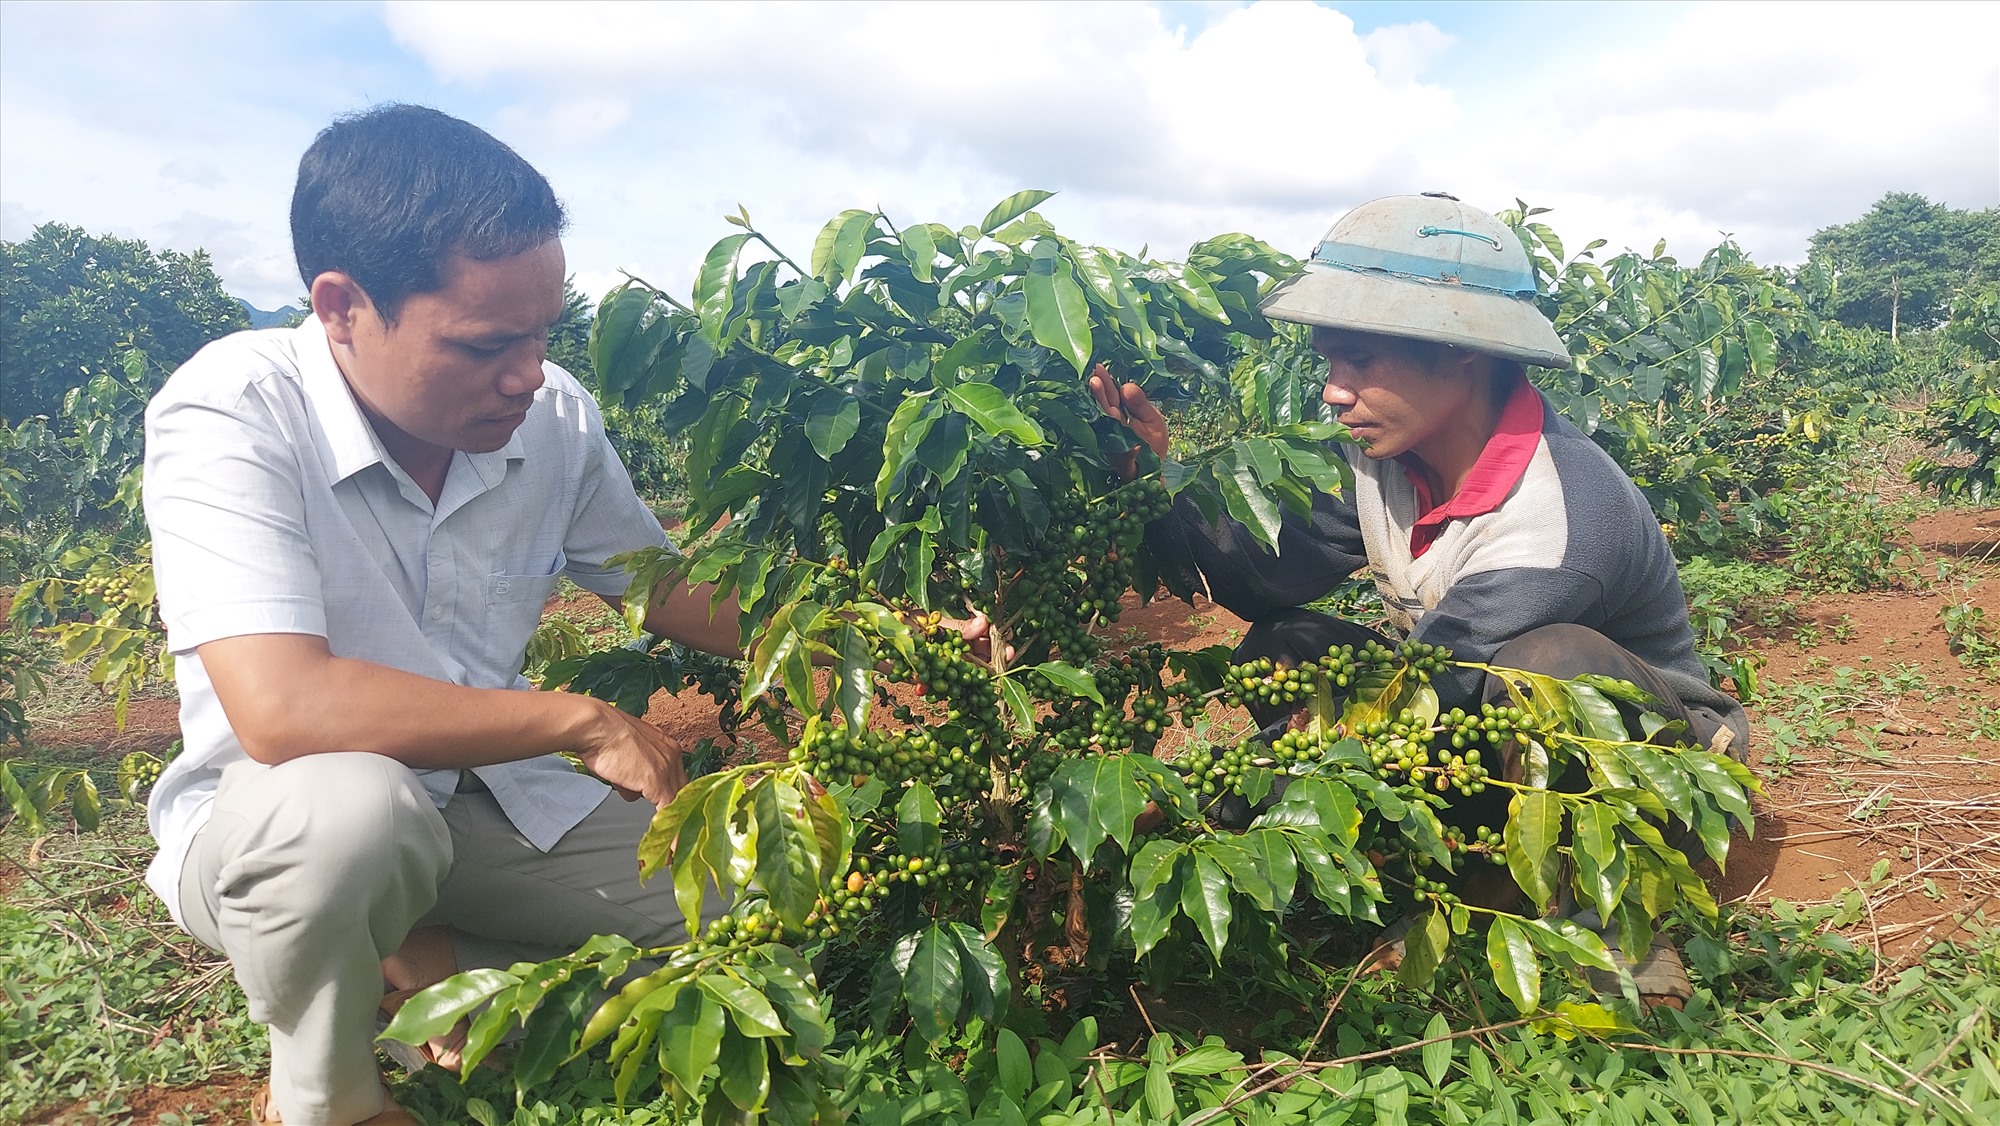 Cà phê Arabica phù hợp đặc trưng khí hậu, thổ nhưỡng huyện Hướng Hóa nên phát triển tốt và cho mùi vị thơm ngon, đặc trưng - Ảnh: Lê Trường